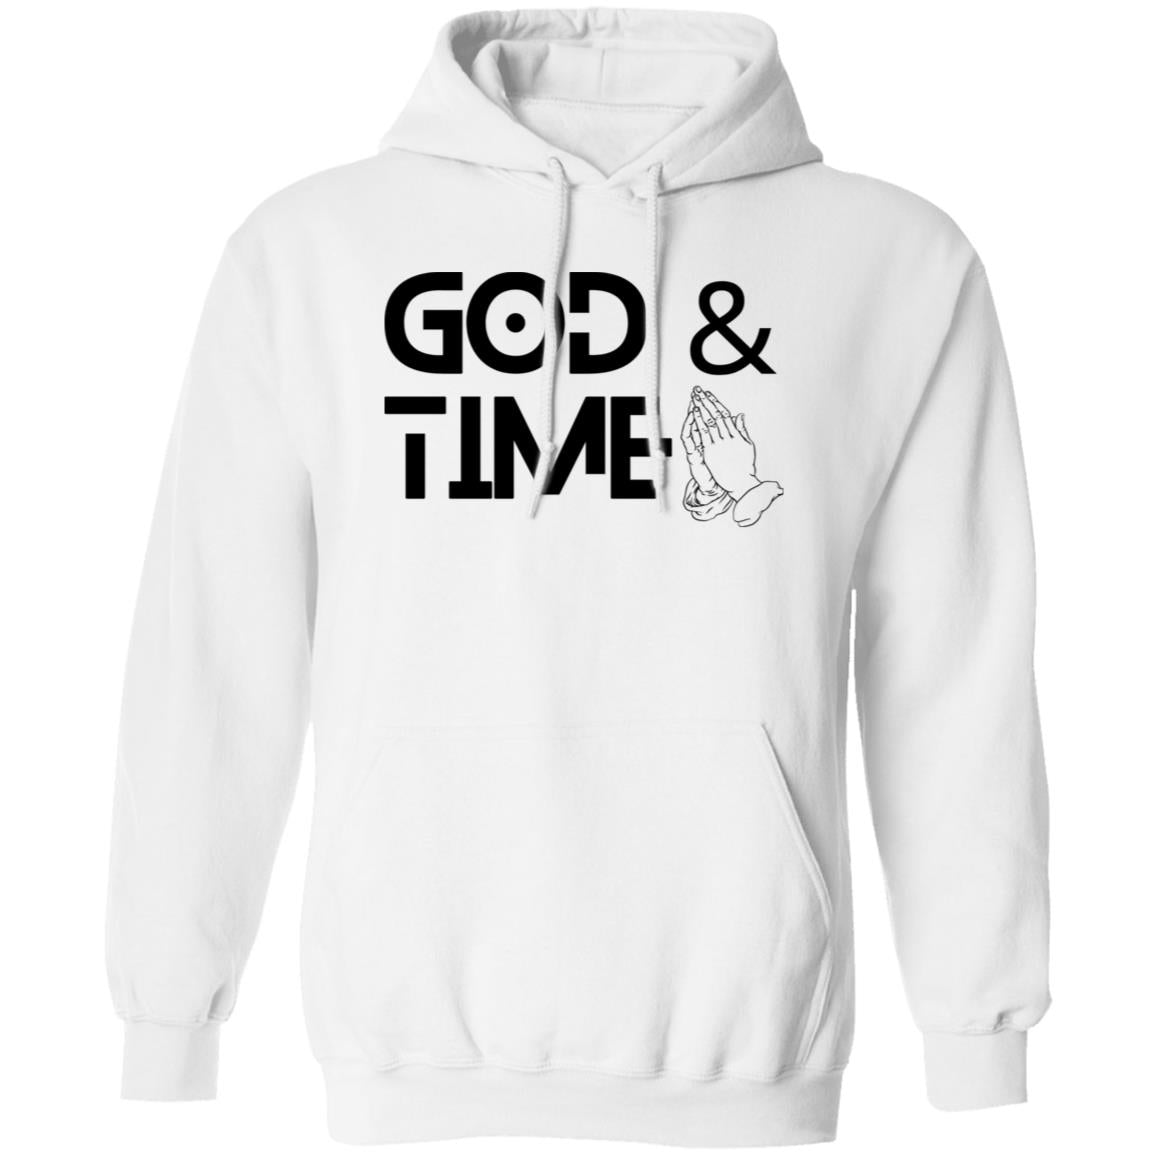 God & Time (black print) Hoodie